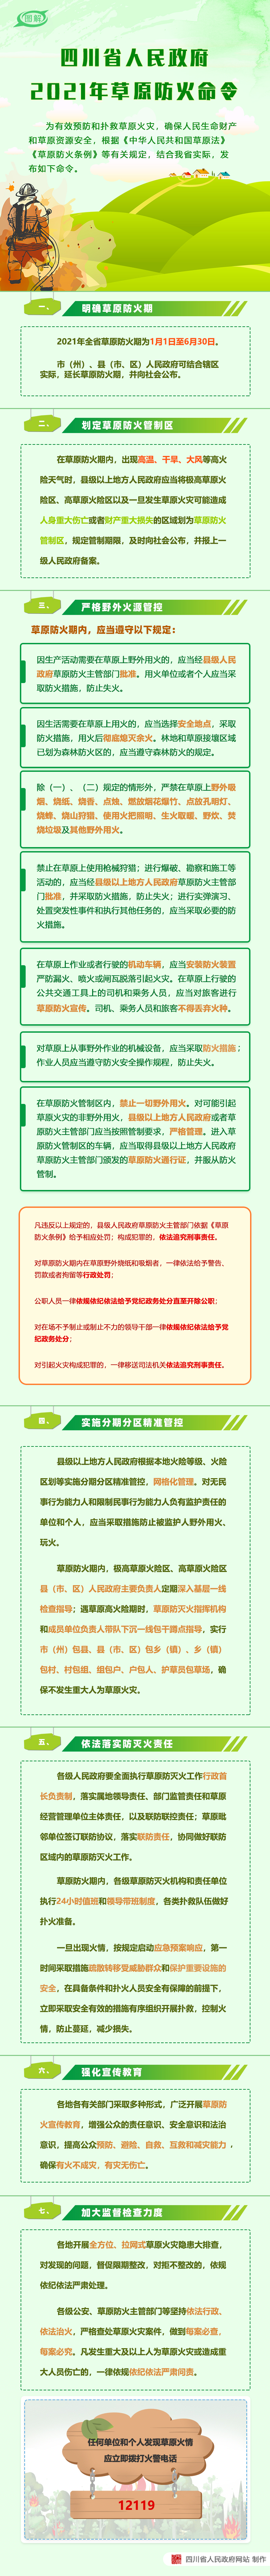 四川省人民政府2021年草原防火命令